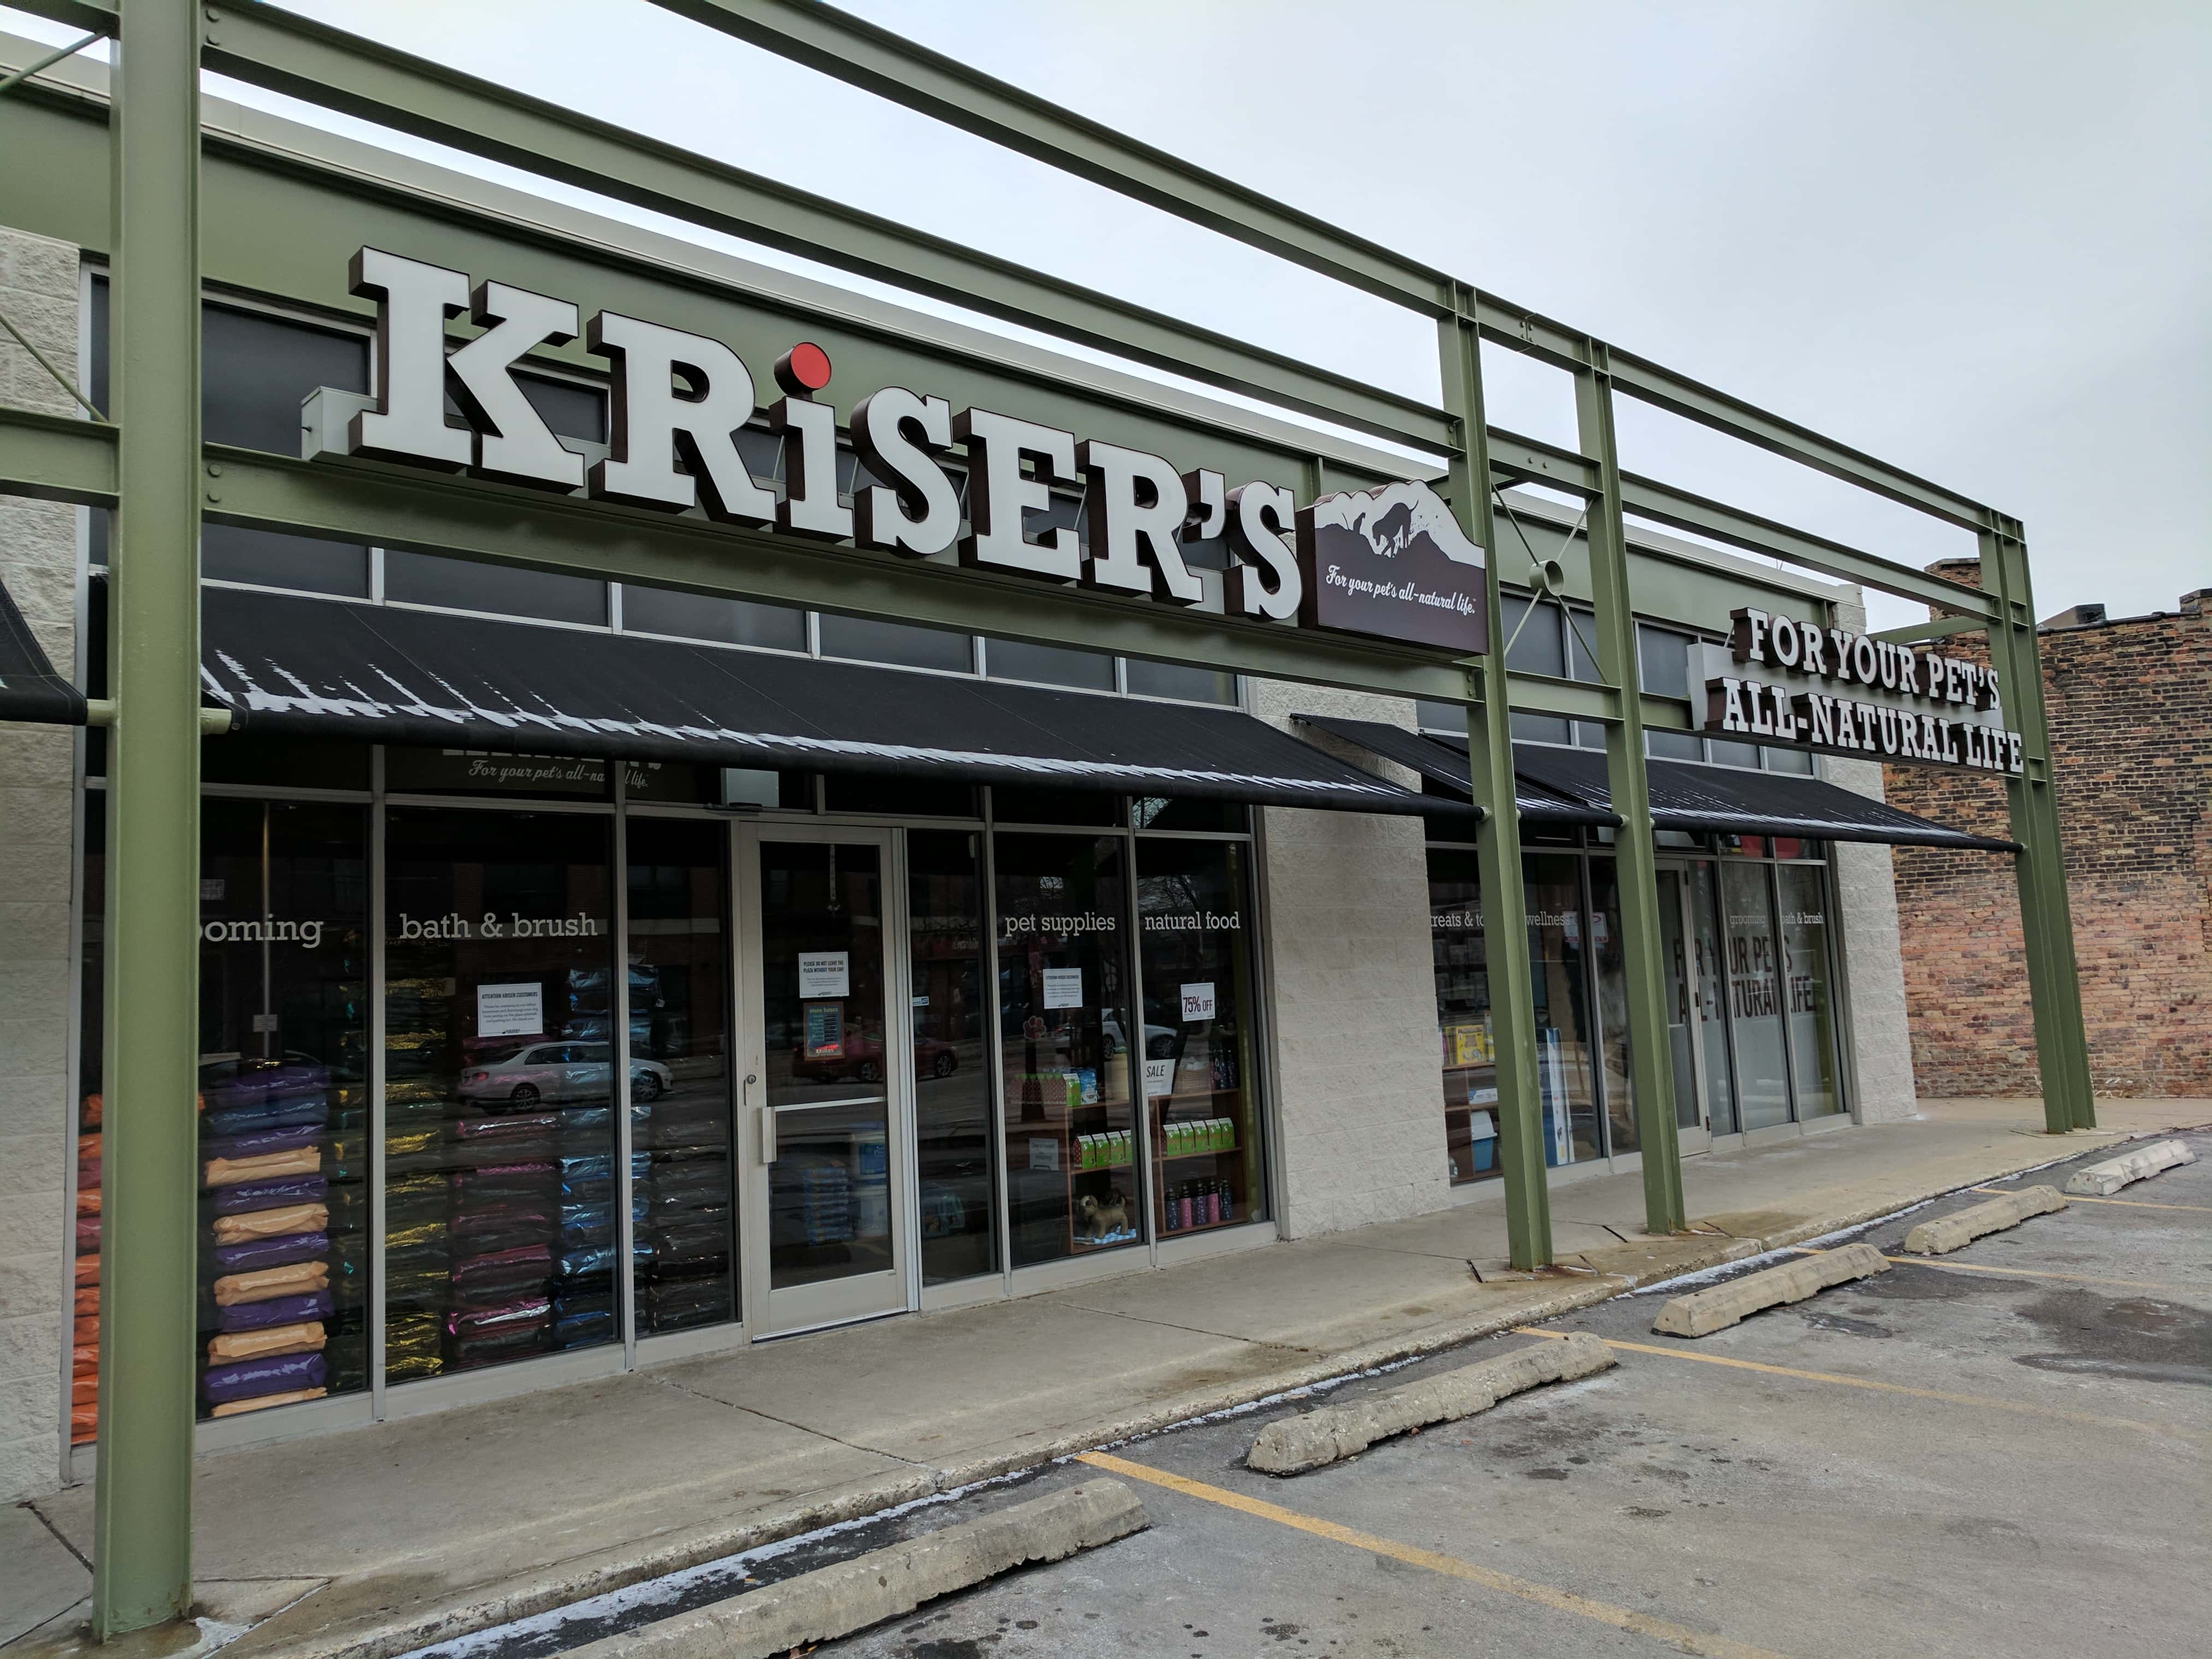 Kriser’s Natural Pet - Chicago (IL 60647), US, pet food store near me